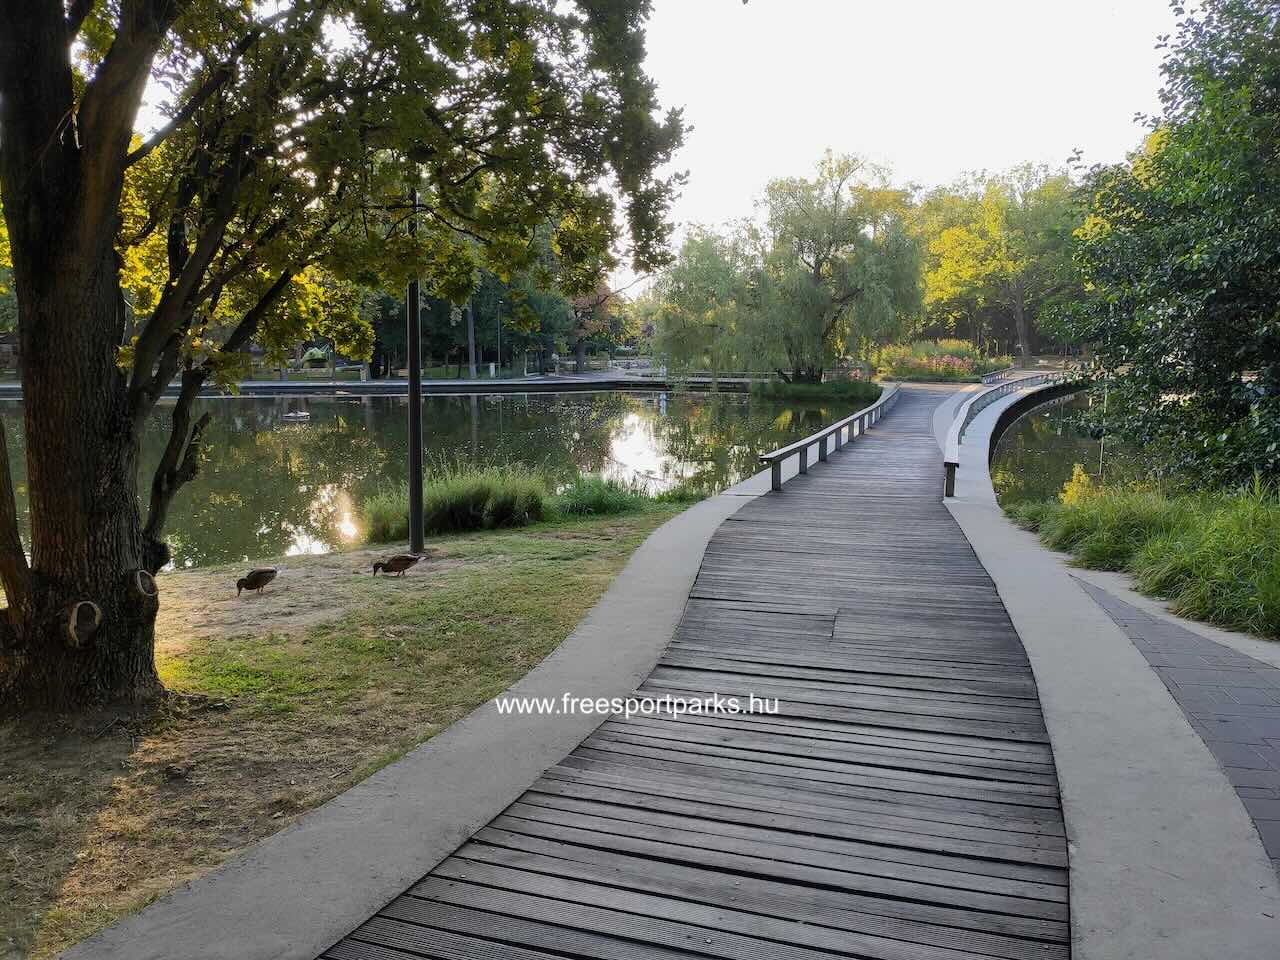 híd a Békás-tavon, Debrecen - Free Sport Parks Blog